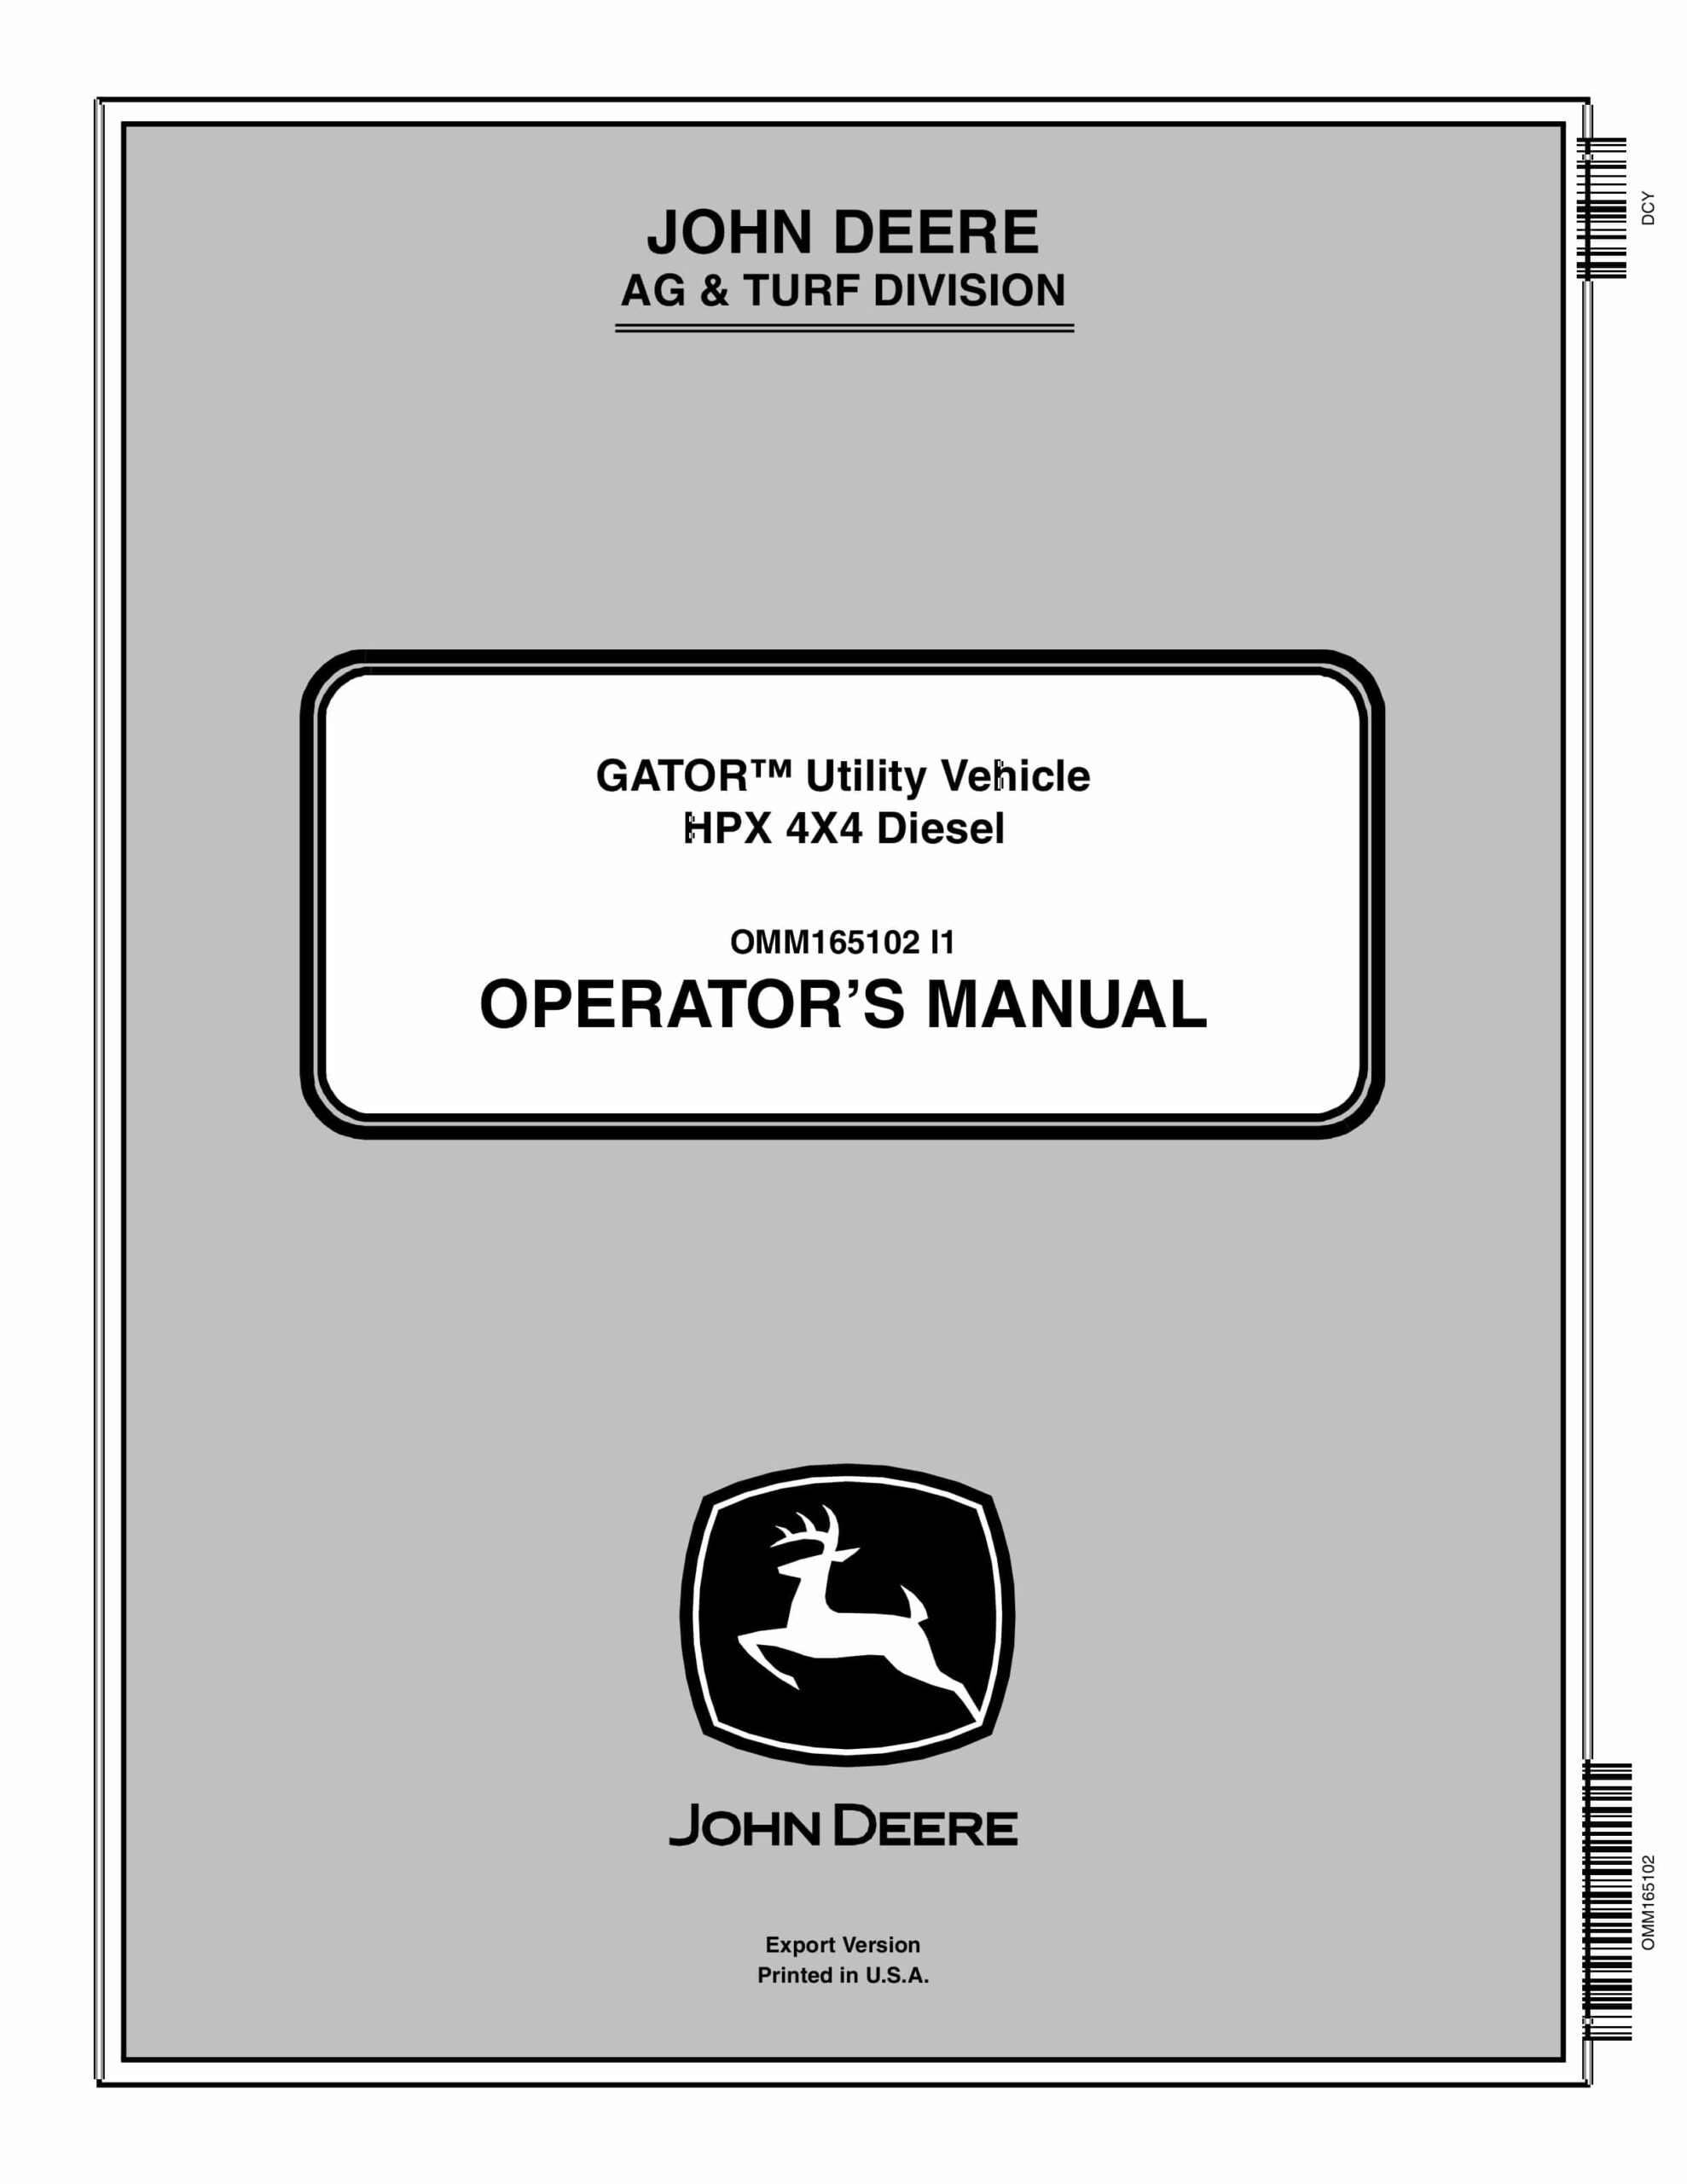 John Deere HPX 4X4 Diesel GATOR Utility Vehicles Operator Manual OMM165102-1